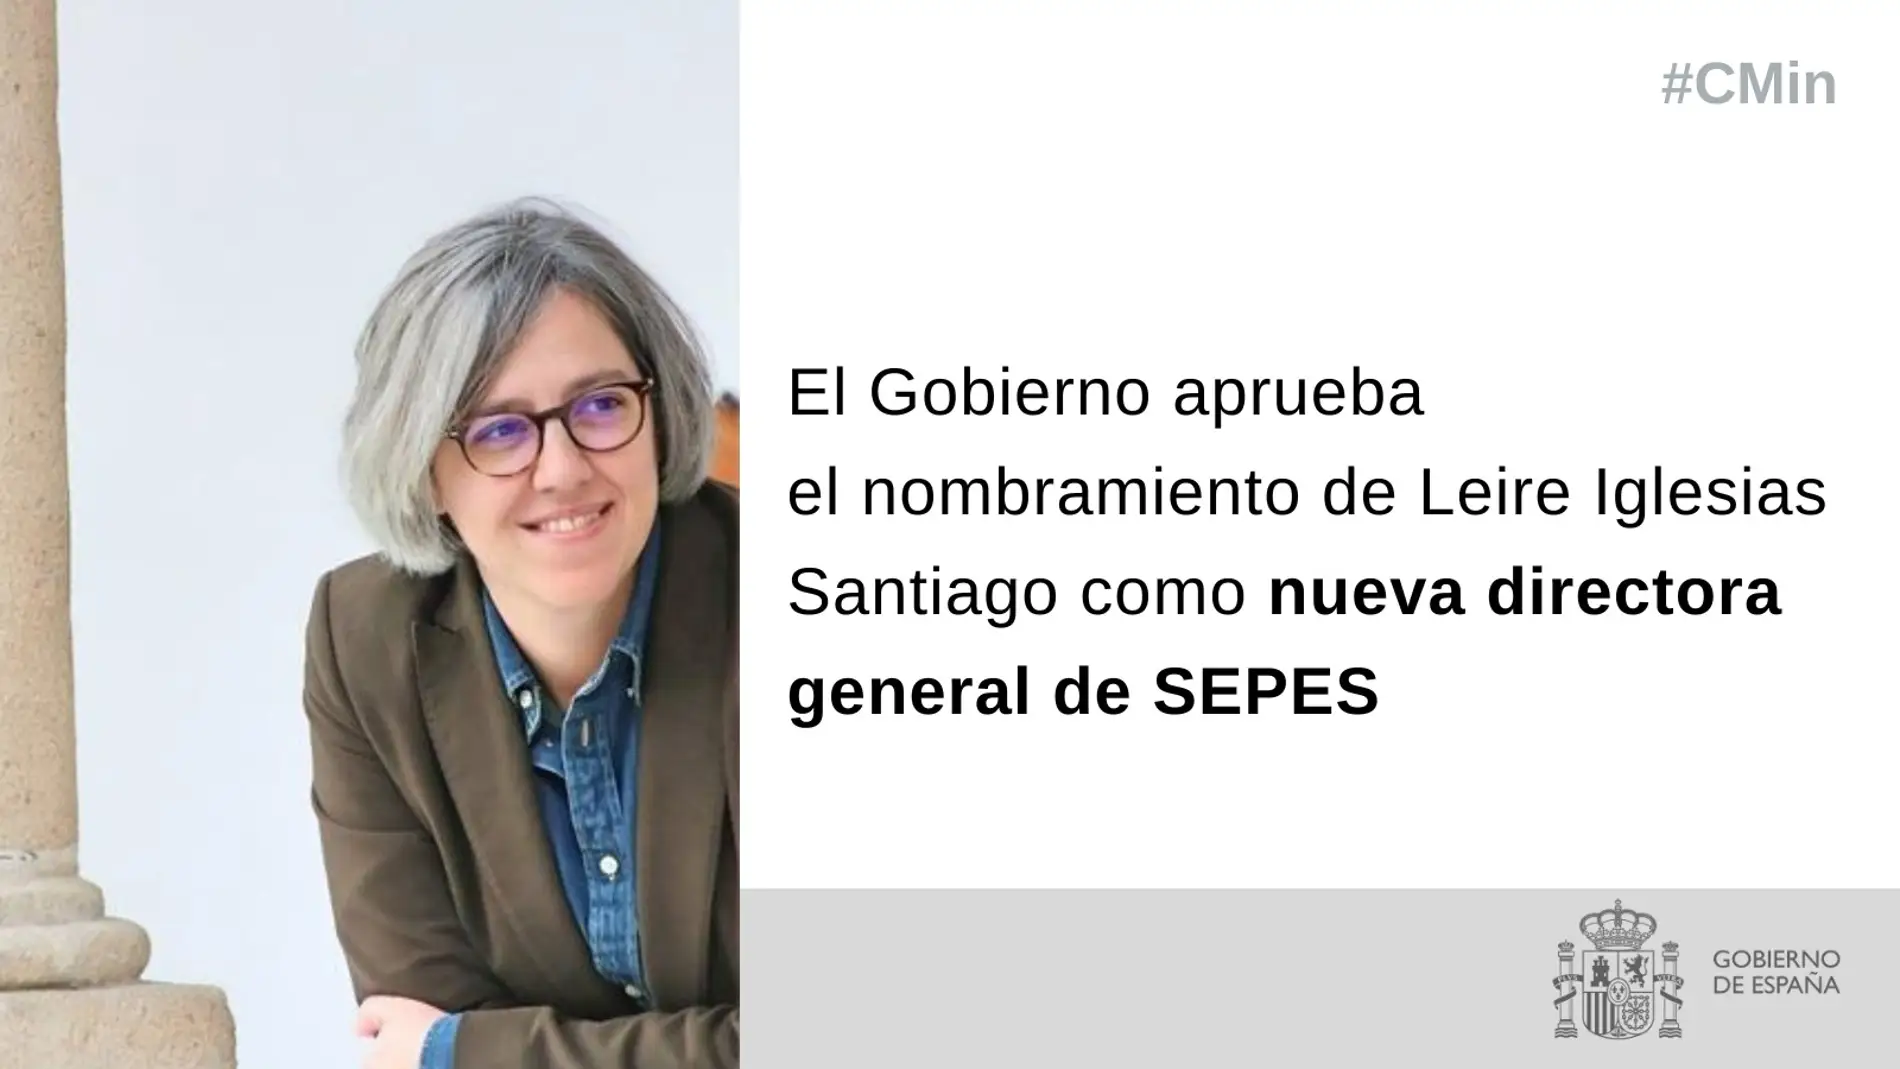 La exconsejera extremeña Leire Iglesias es nombrada nueva directora general de SEPES